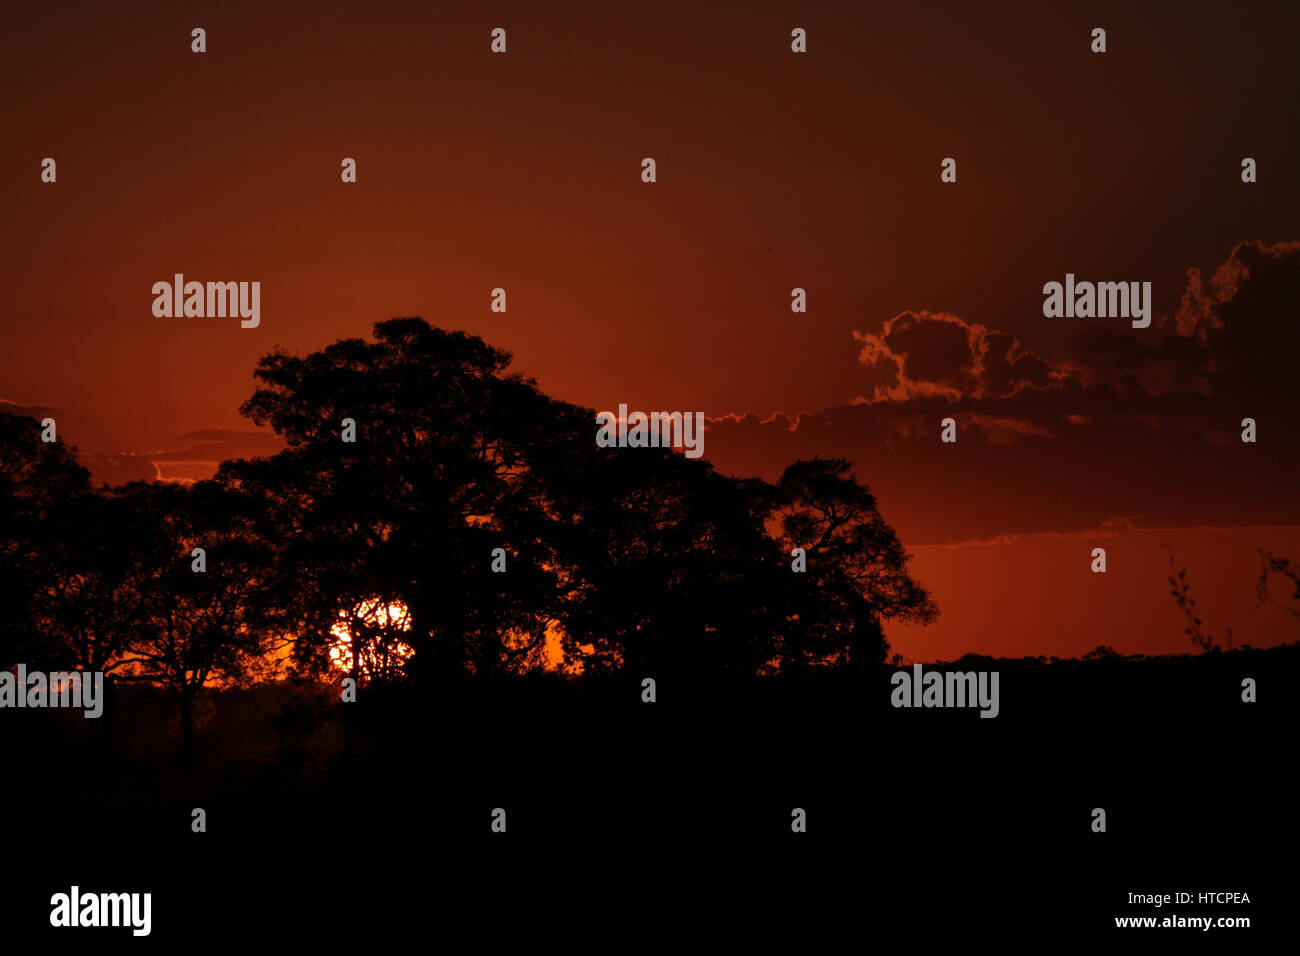 Billet : Brésil, Pantanal : panoramique spectaculaire coucher du soleil orange avec la silhouette des arbres Banque D'Images